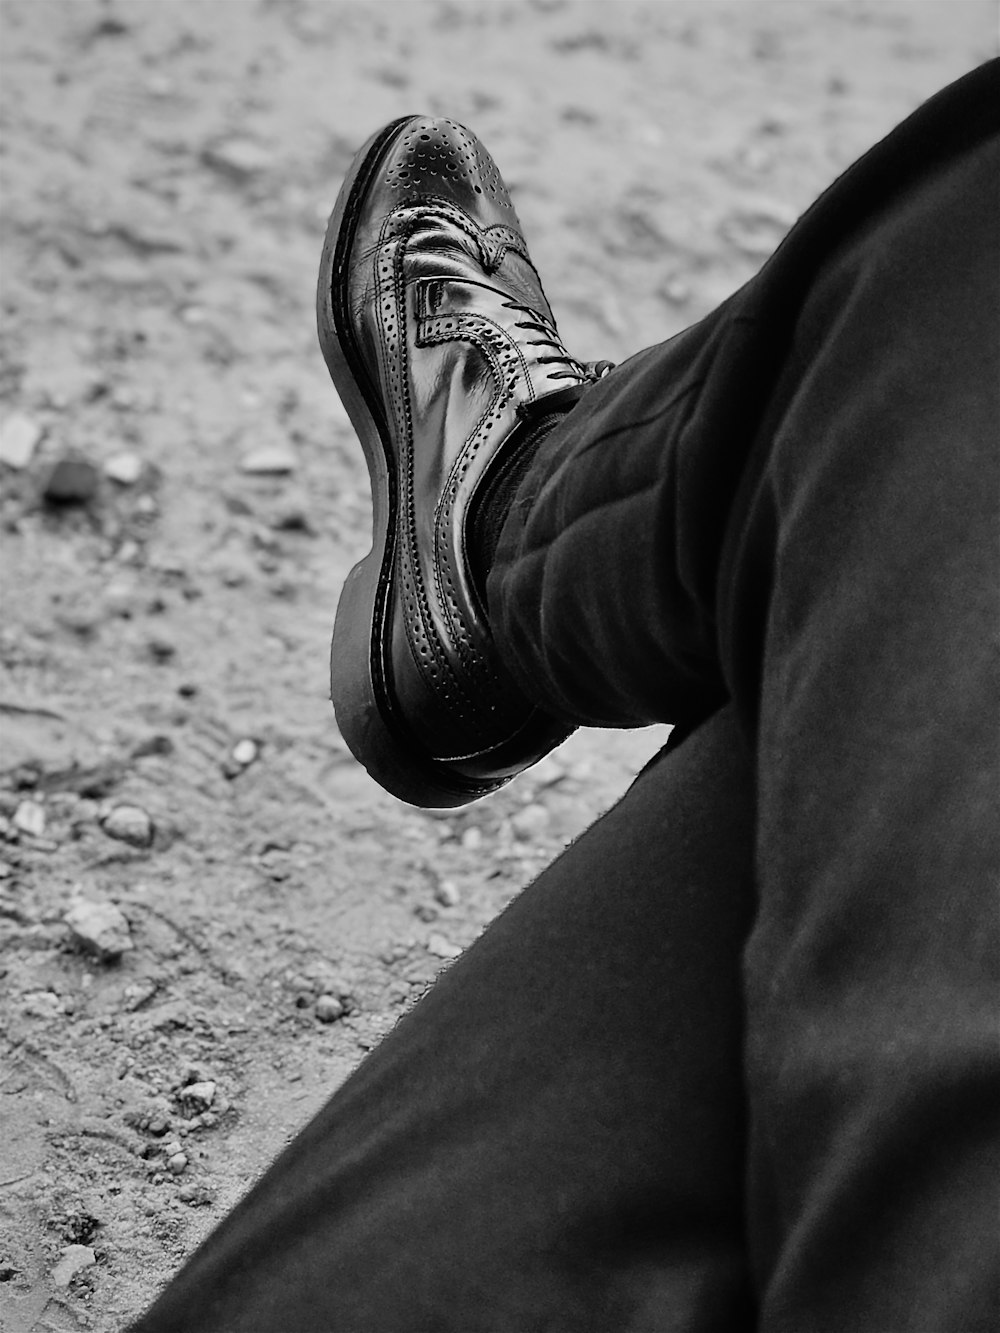 uma foto em preto e branco dos sapatos de uma pessoa